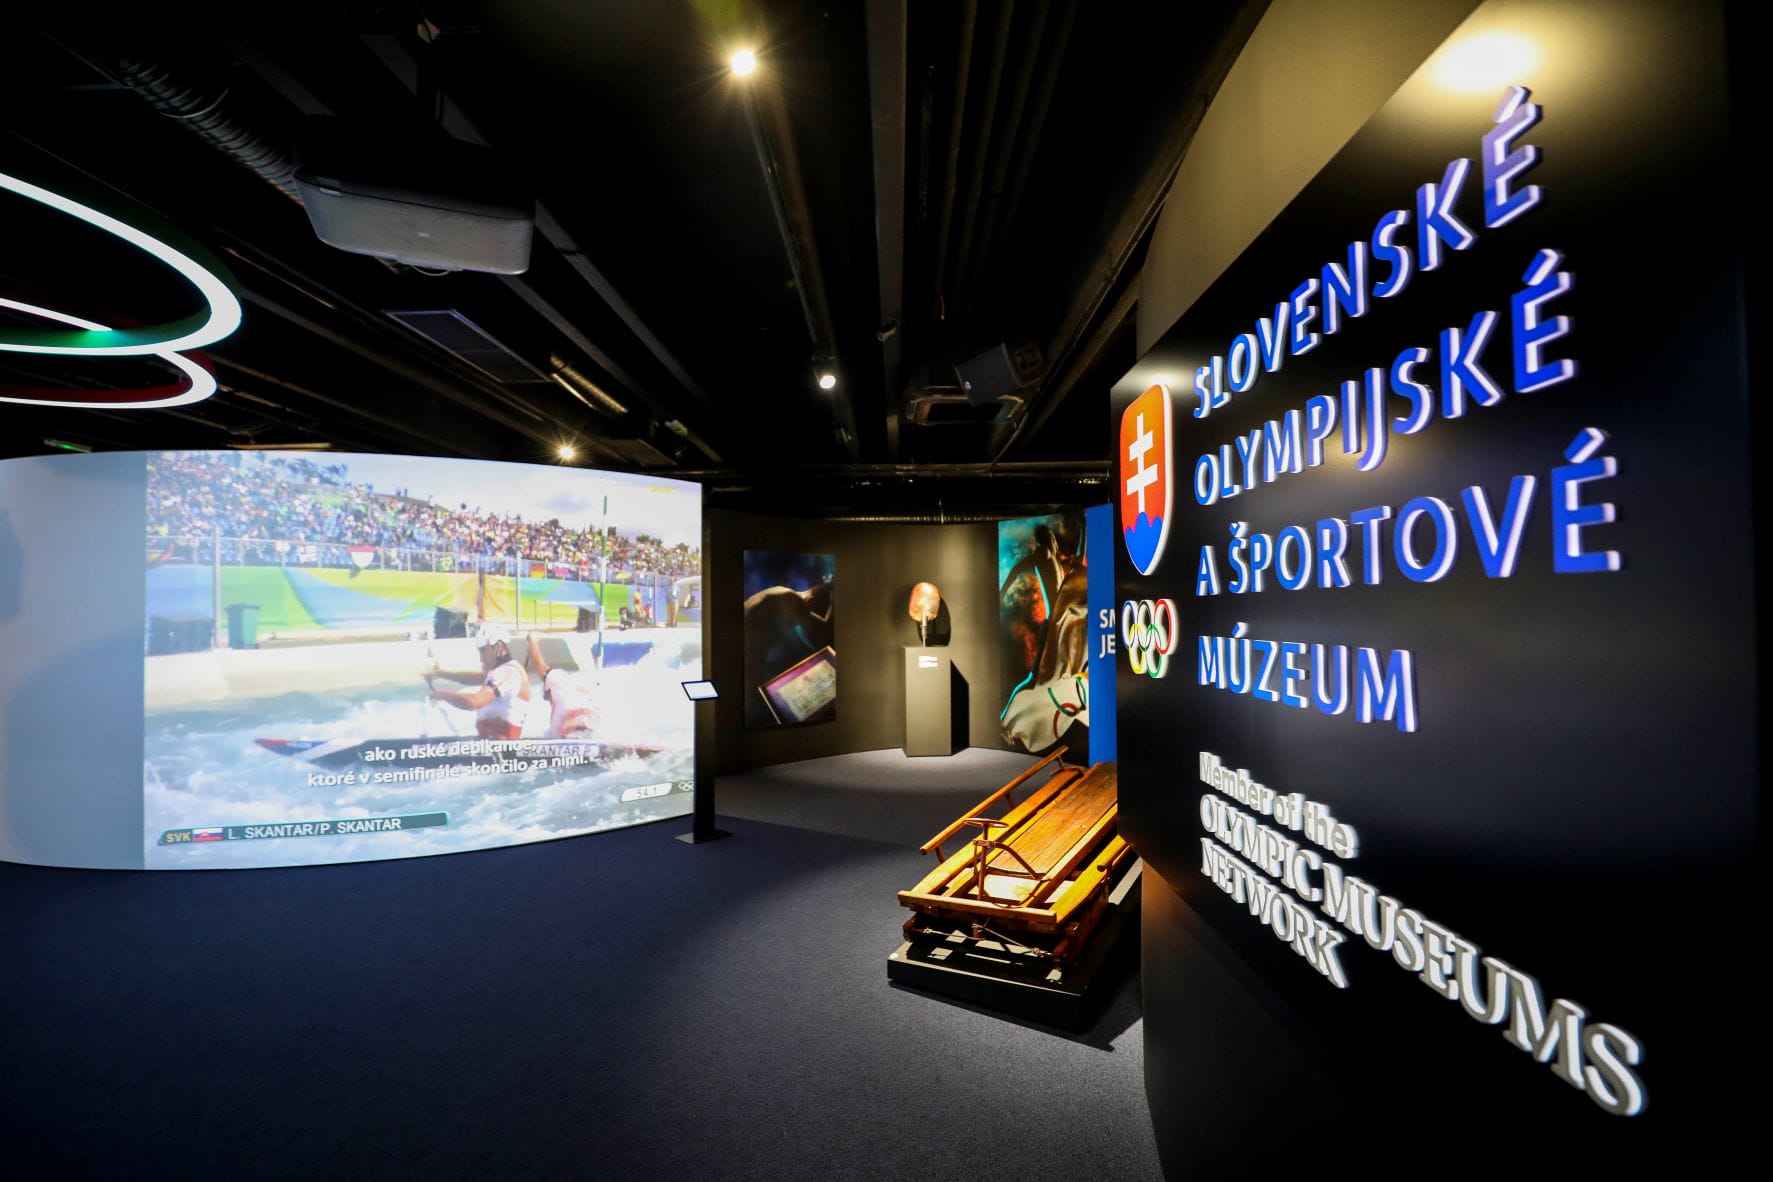 Slovenské olympijské a sportovní muzeum pohled z boku